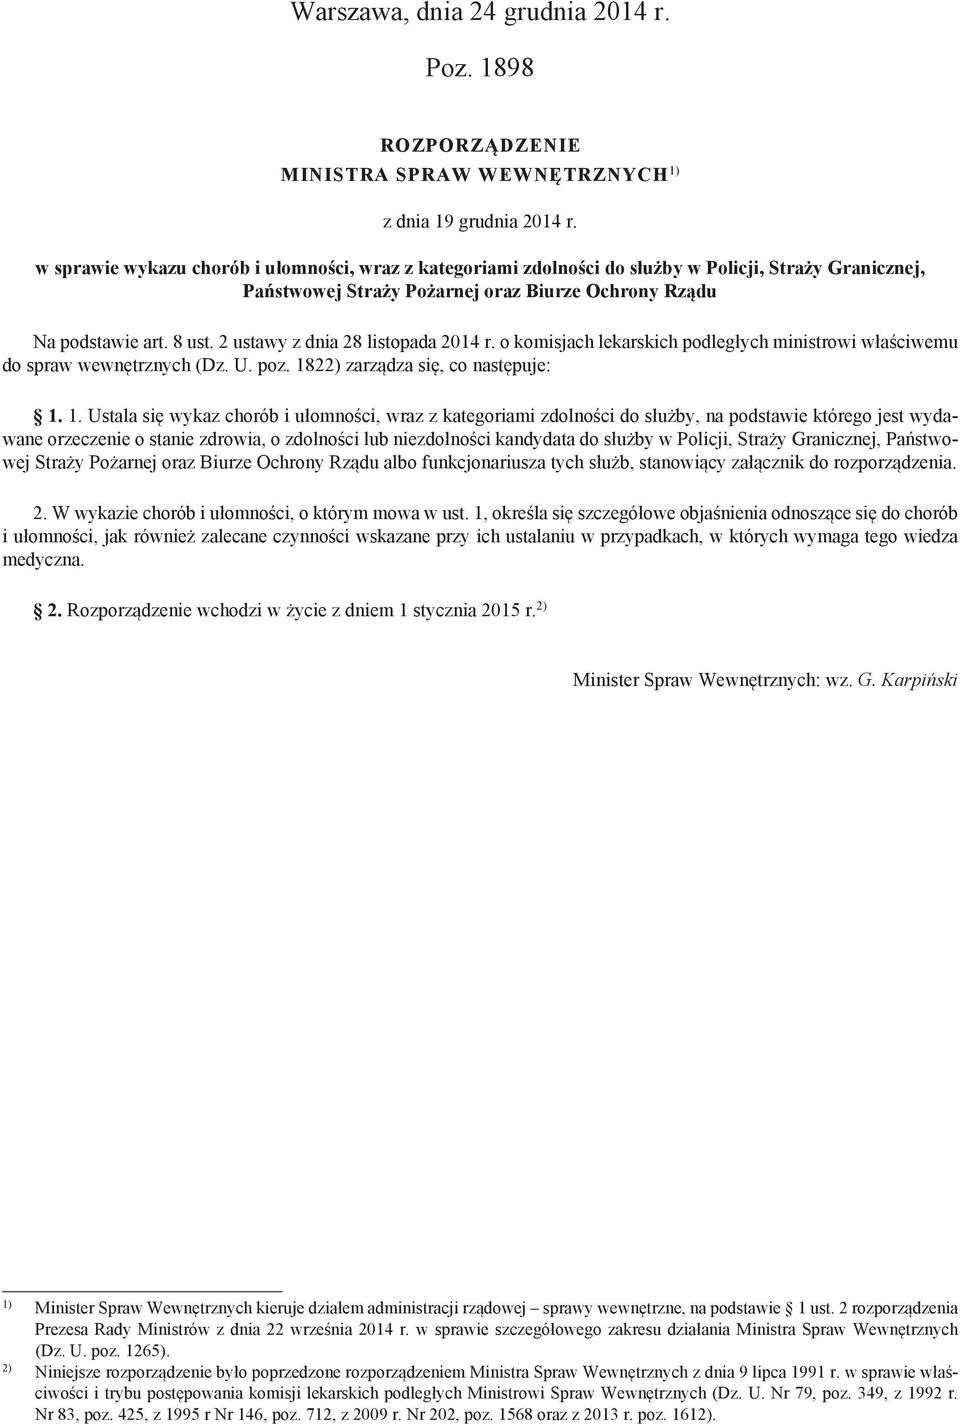 2 ustawy z dnia 28 listopada 2014 r. o komisjach lekarskich podległych ministrowi właściwemu do spraw wewnętrznych (Dz. U. poz. 18